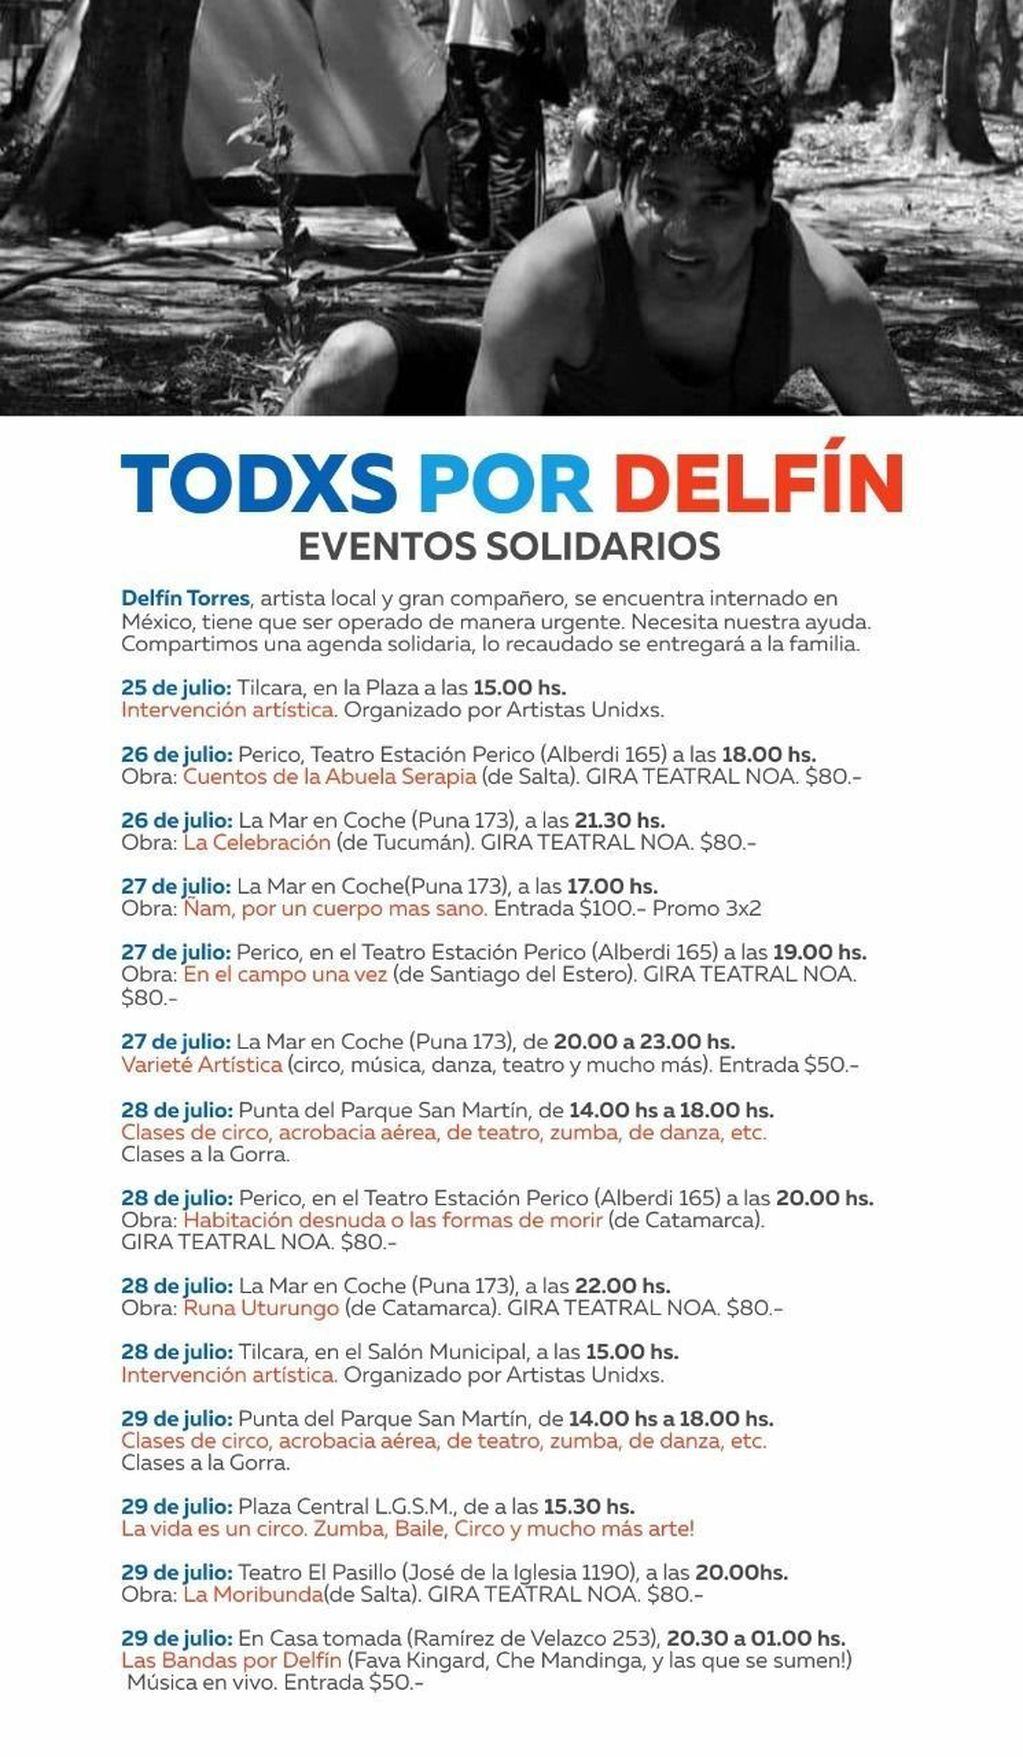 Las actividades solidarias organizadas para recaudar fondos para Delfín Torres.